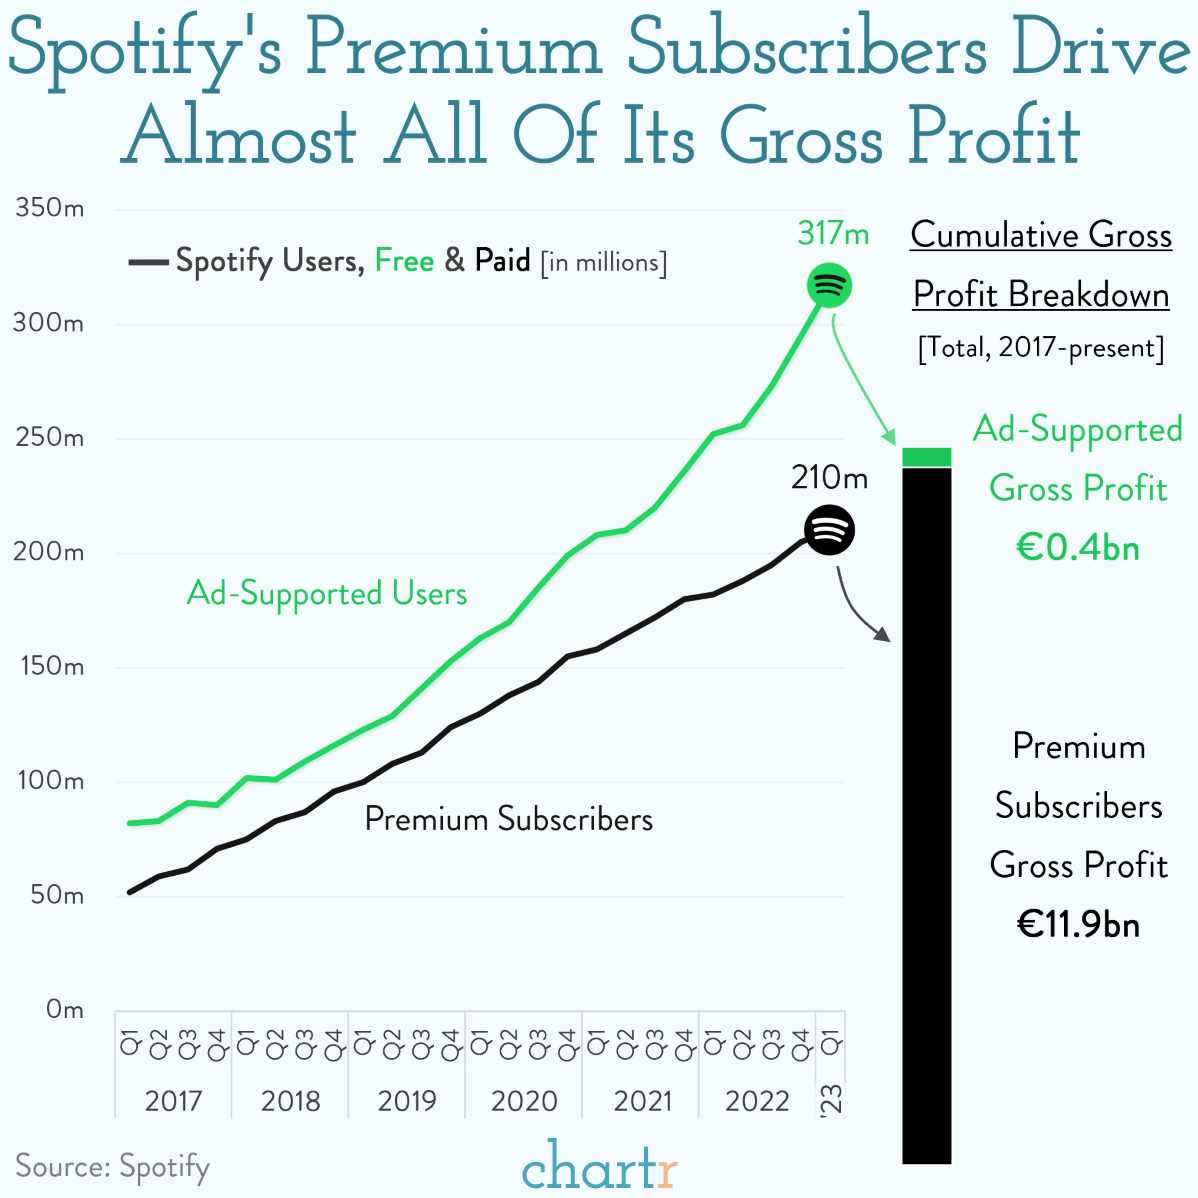 Spotify User Breakdown + Gross Profit Since 2017 [OC] : r/dataisbeautiful